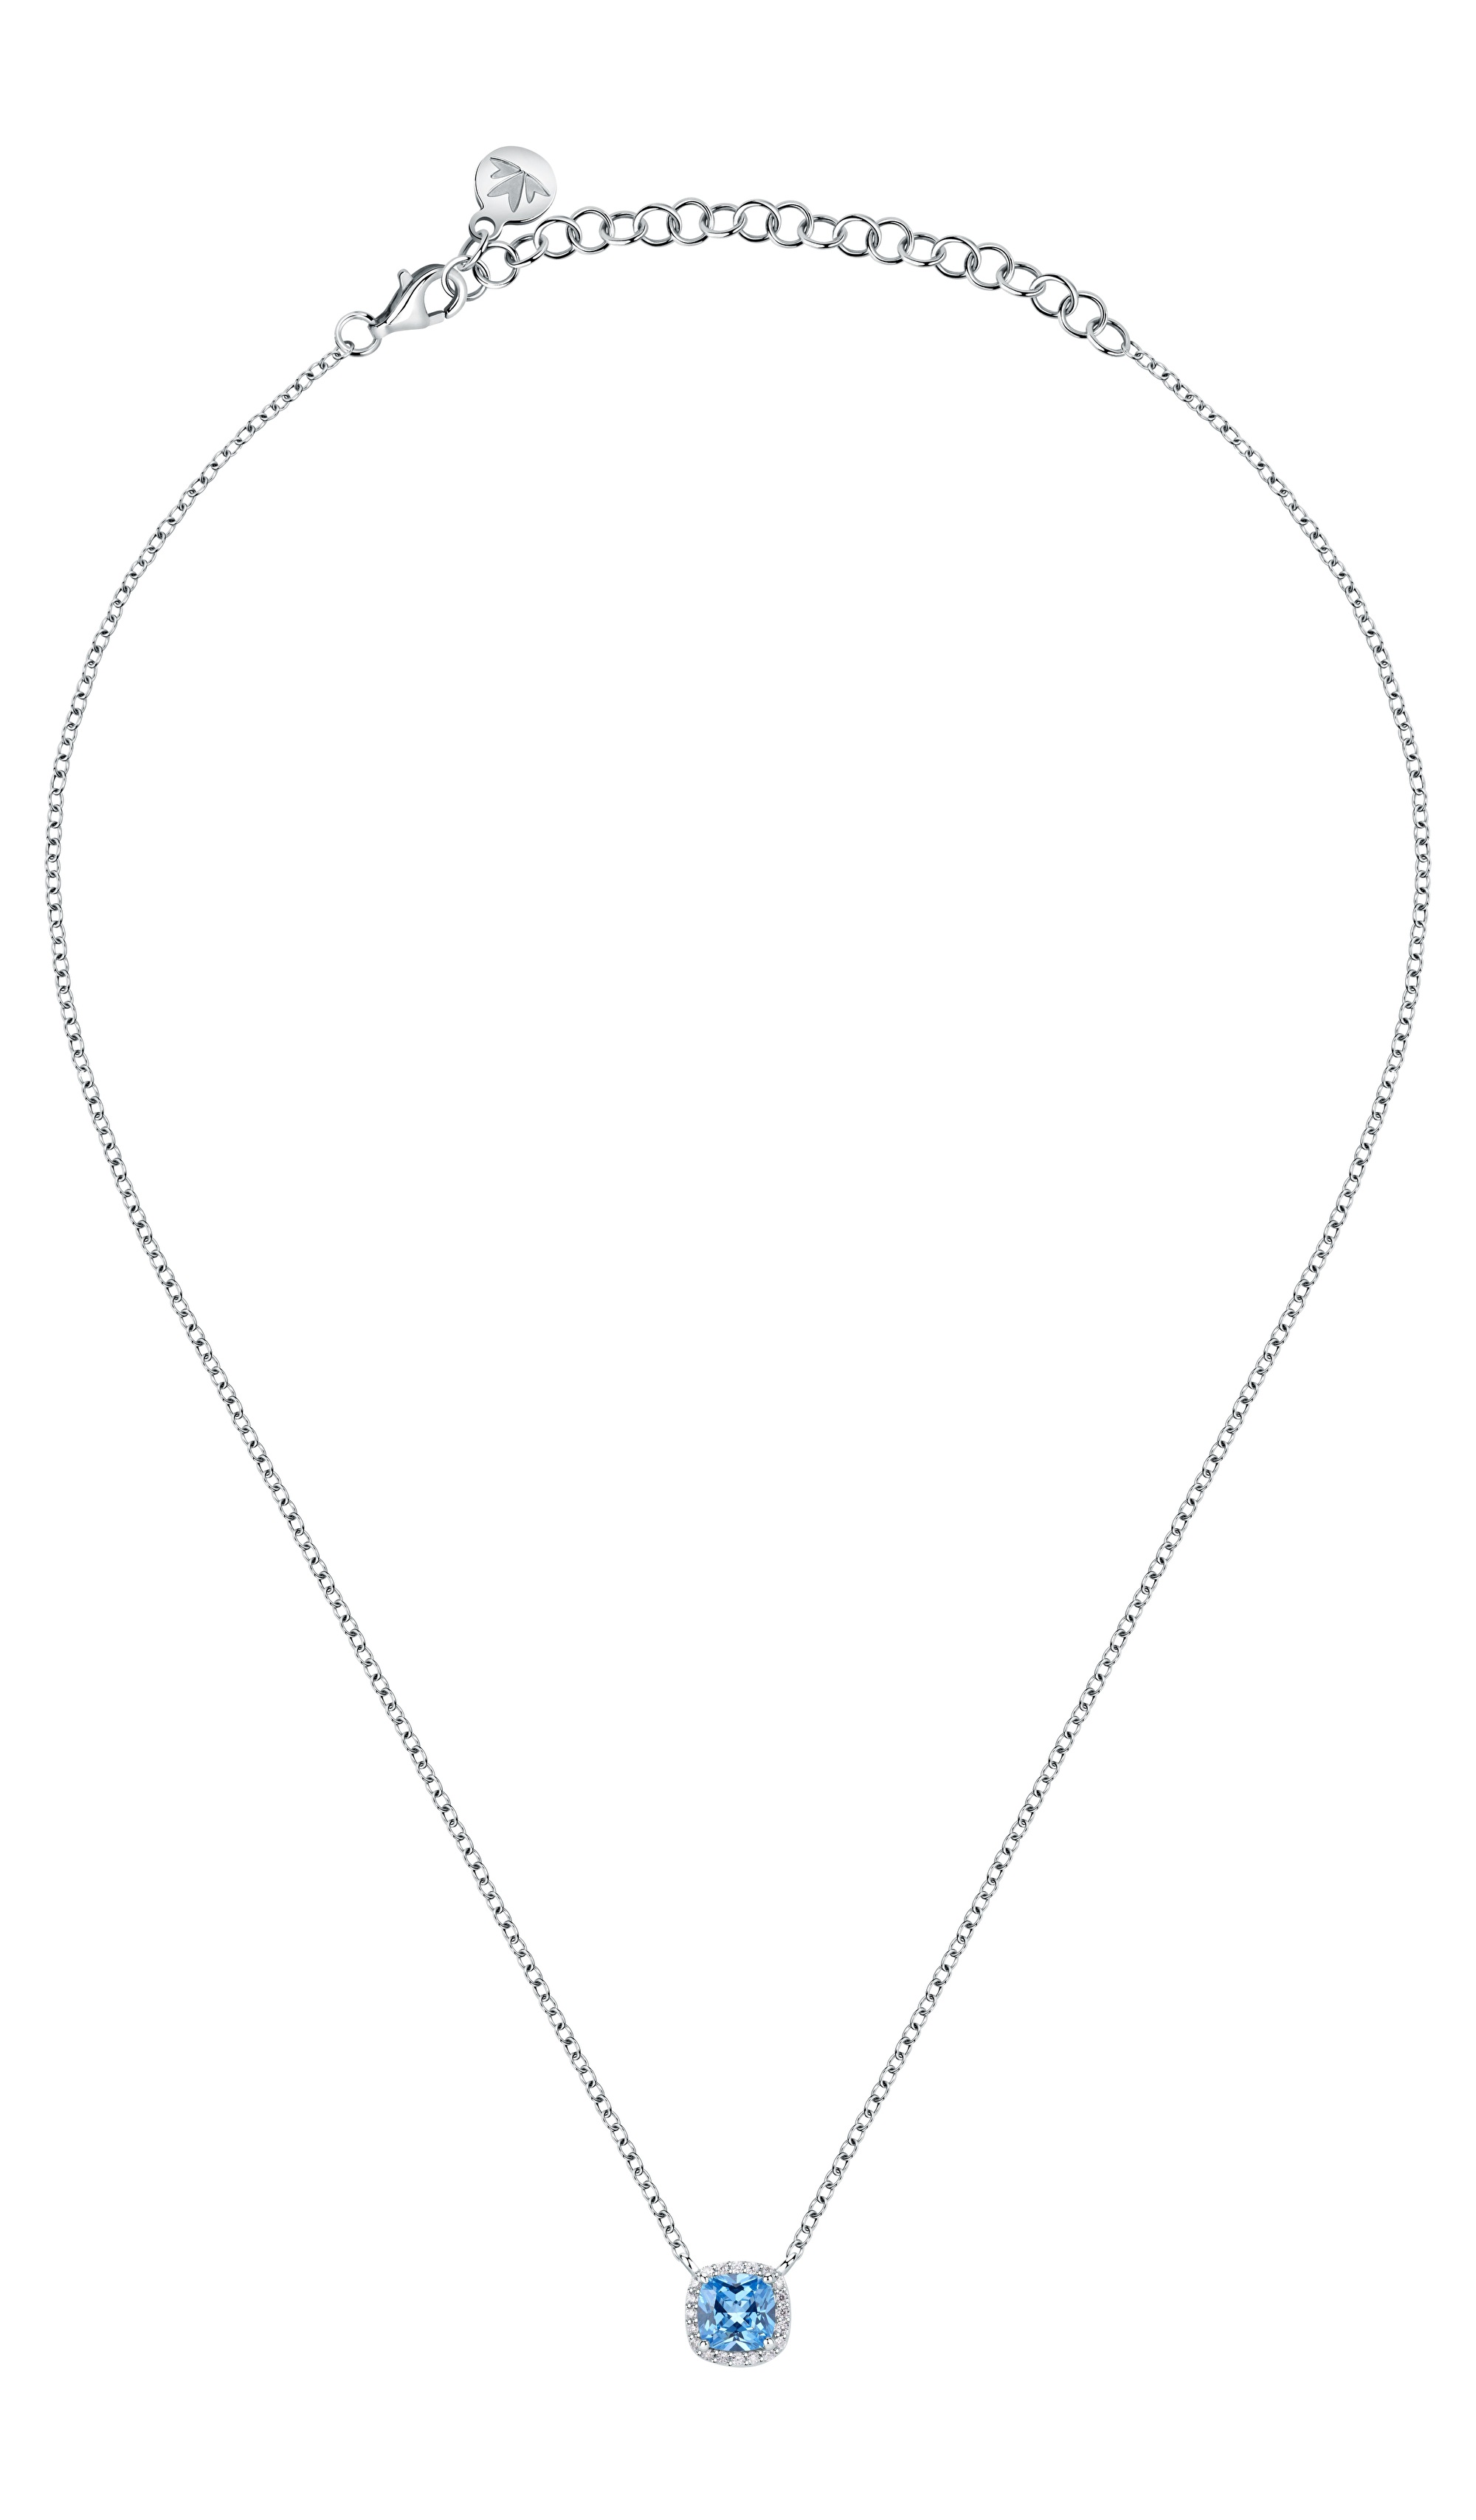 Morellato Jedinečný stříbrný náhrdelník Tesori SAIW108